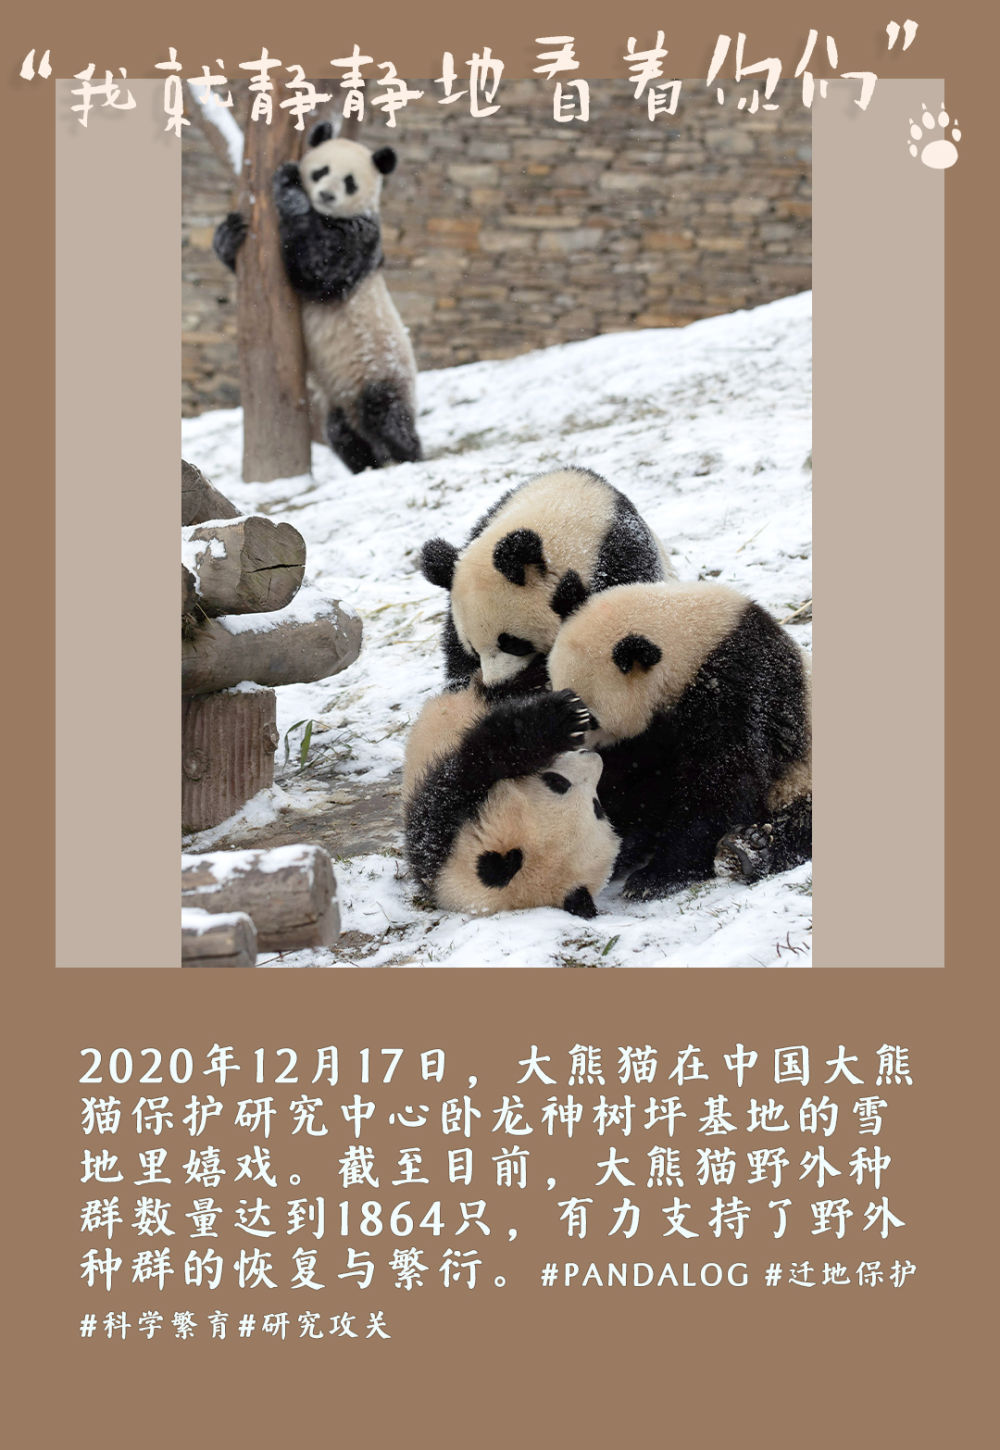 我国大熊猫保护取得积极成效 大熊猫种群从"濒危"到"易危 成为保护